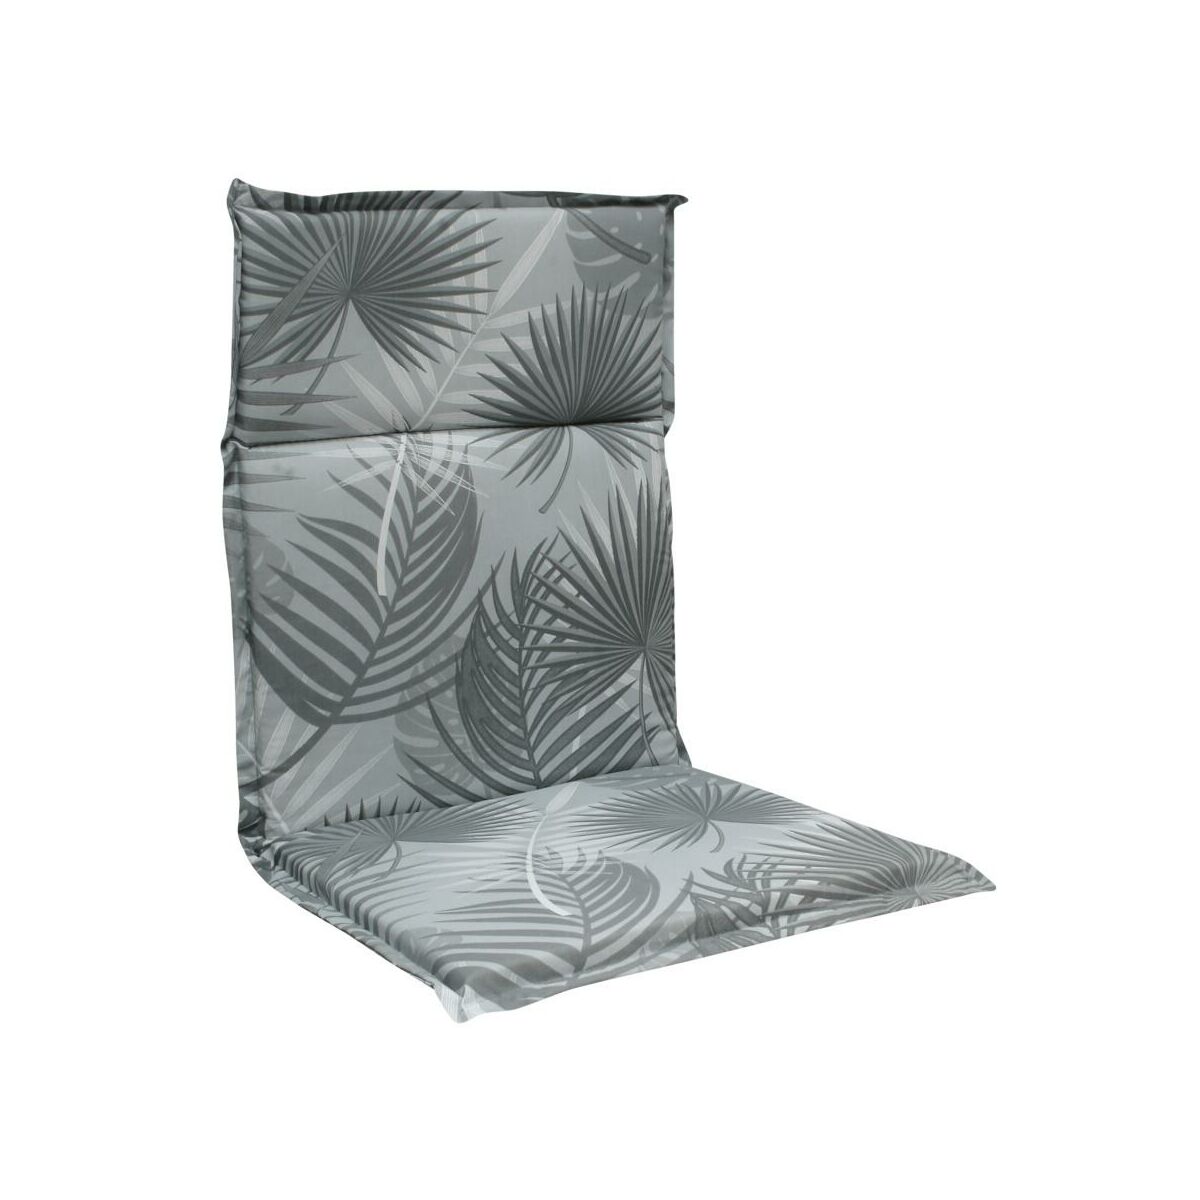 Poduszka Na Krzeslo Cino 107 X 47 X 4 5 Cm Palma Sun Garden Poduszki Na Meble Ogrodowe W Atrakcyjnej Cenie W Sklepach Leroy Merlin